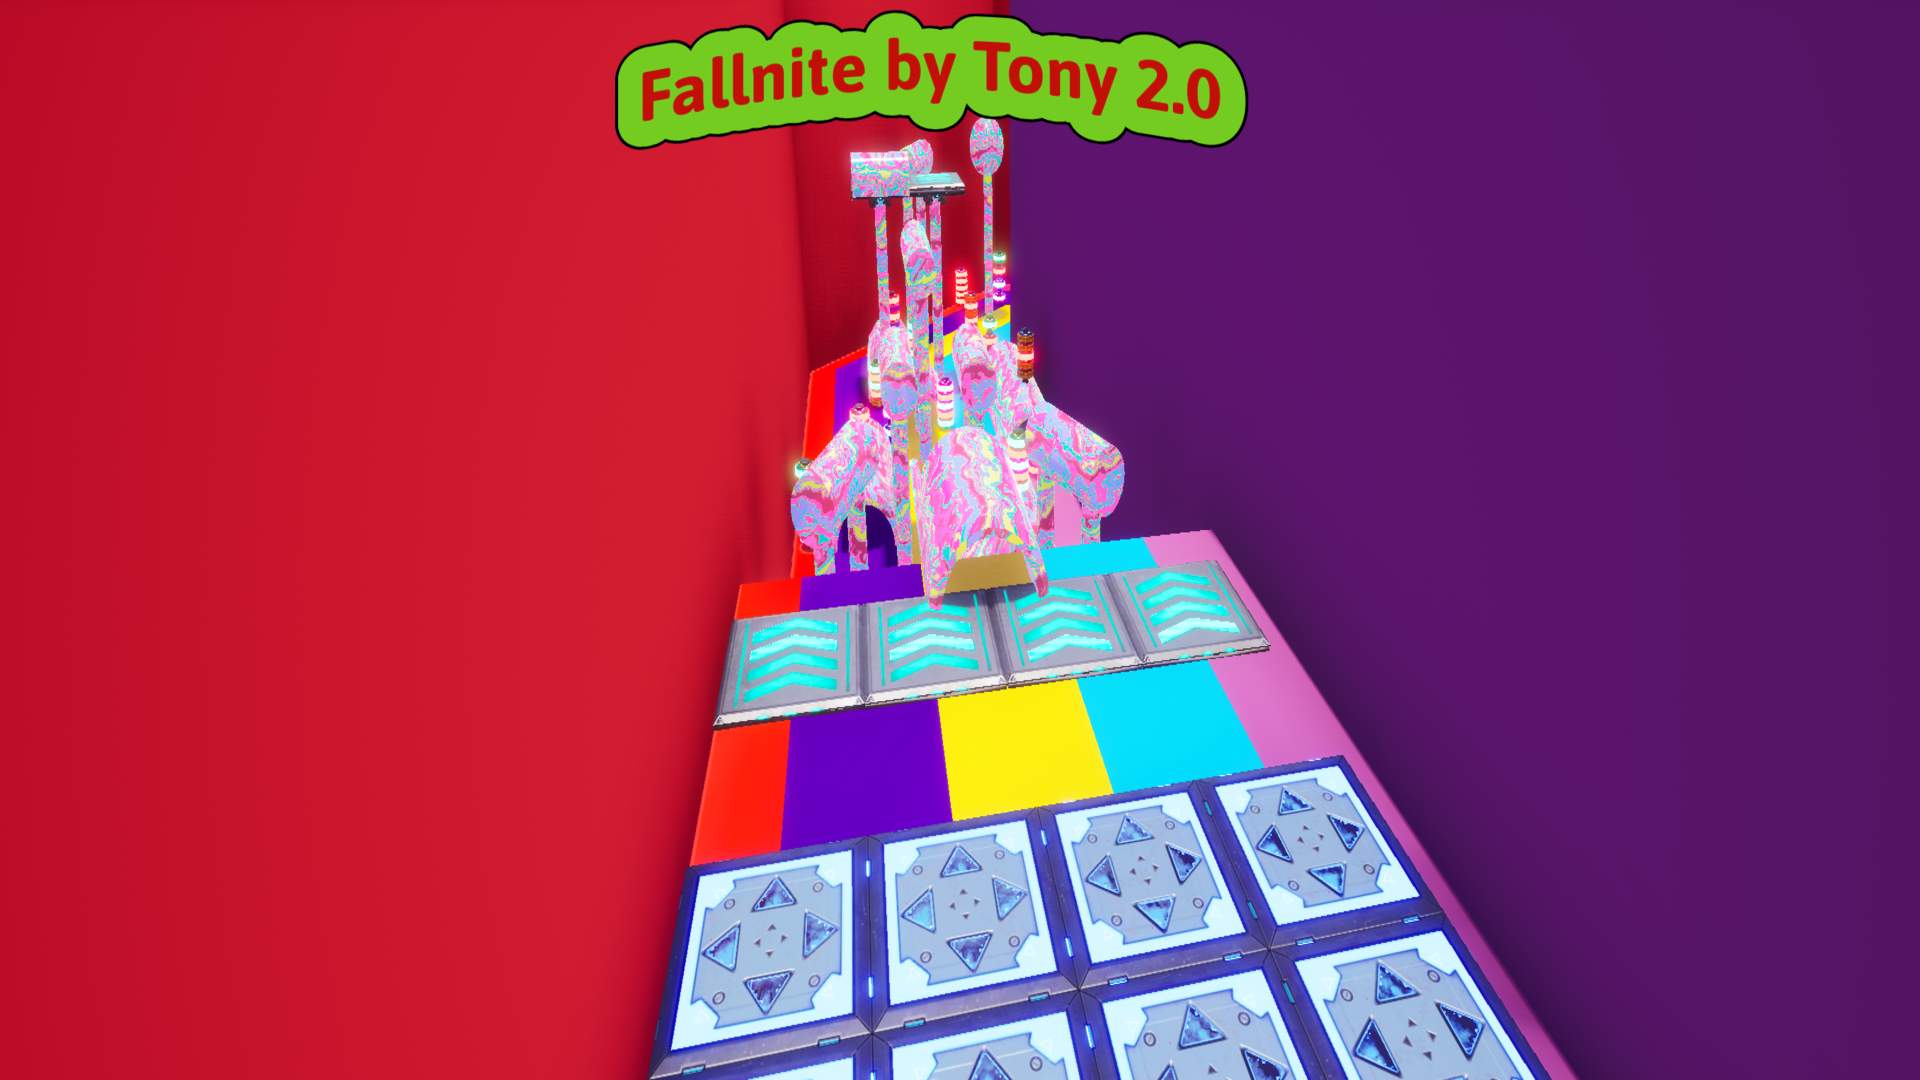 Tony's Fallnite 2.0